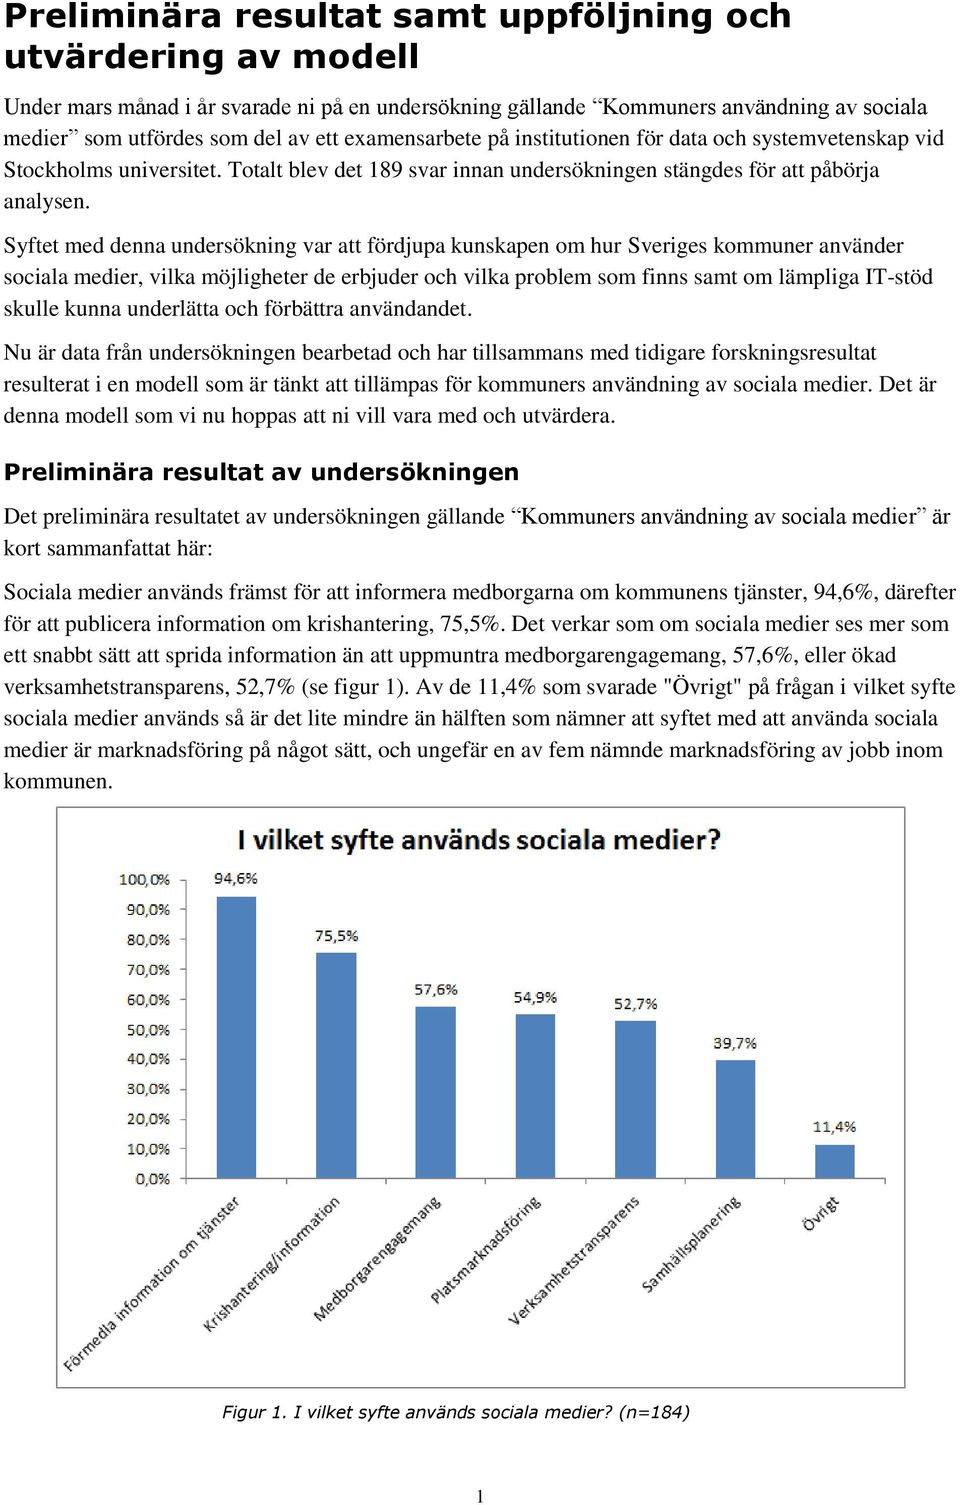 Syftet med denna undersökning var att fördjupa kunskapen om hur Sveriges kommuner använder sociala medier, vilka möjligheter de erbjuder och vilka problem som finns samt om lämpliga IT-stöd skulle